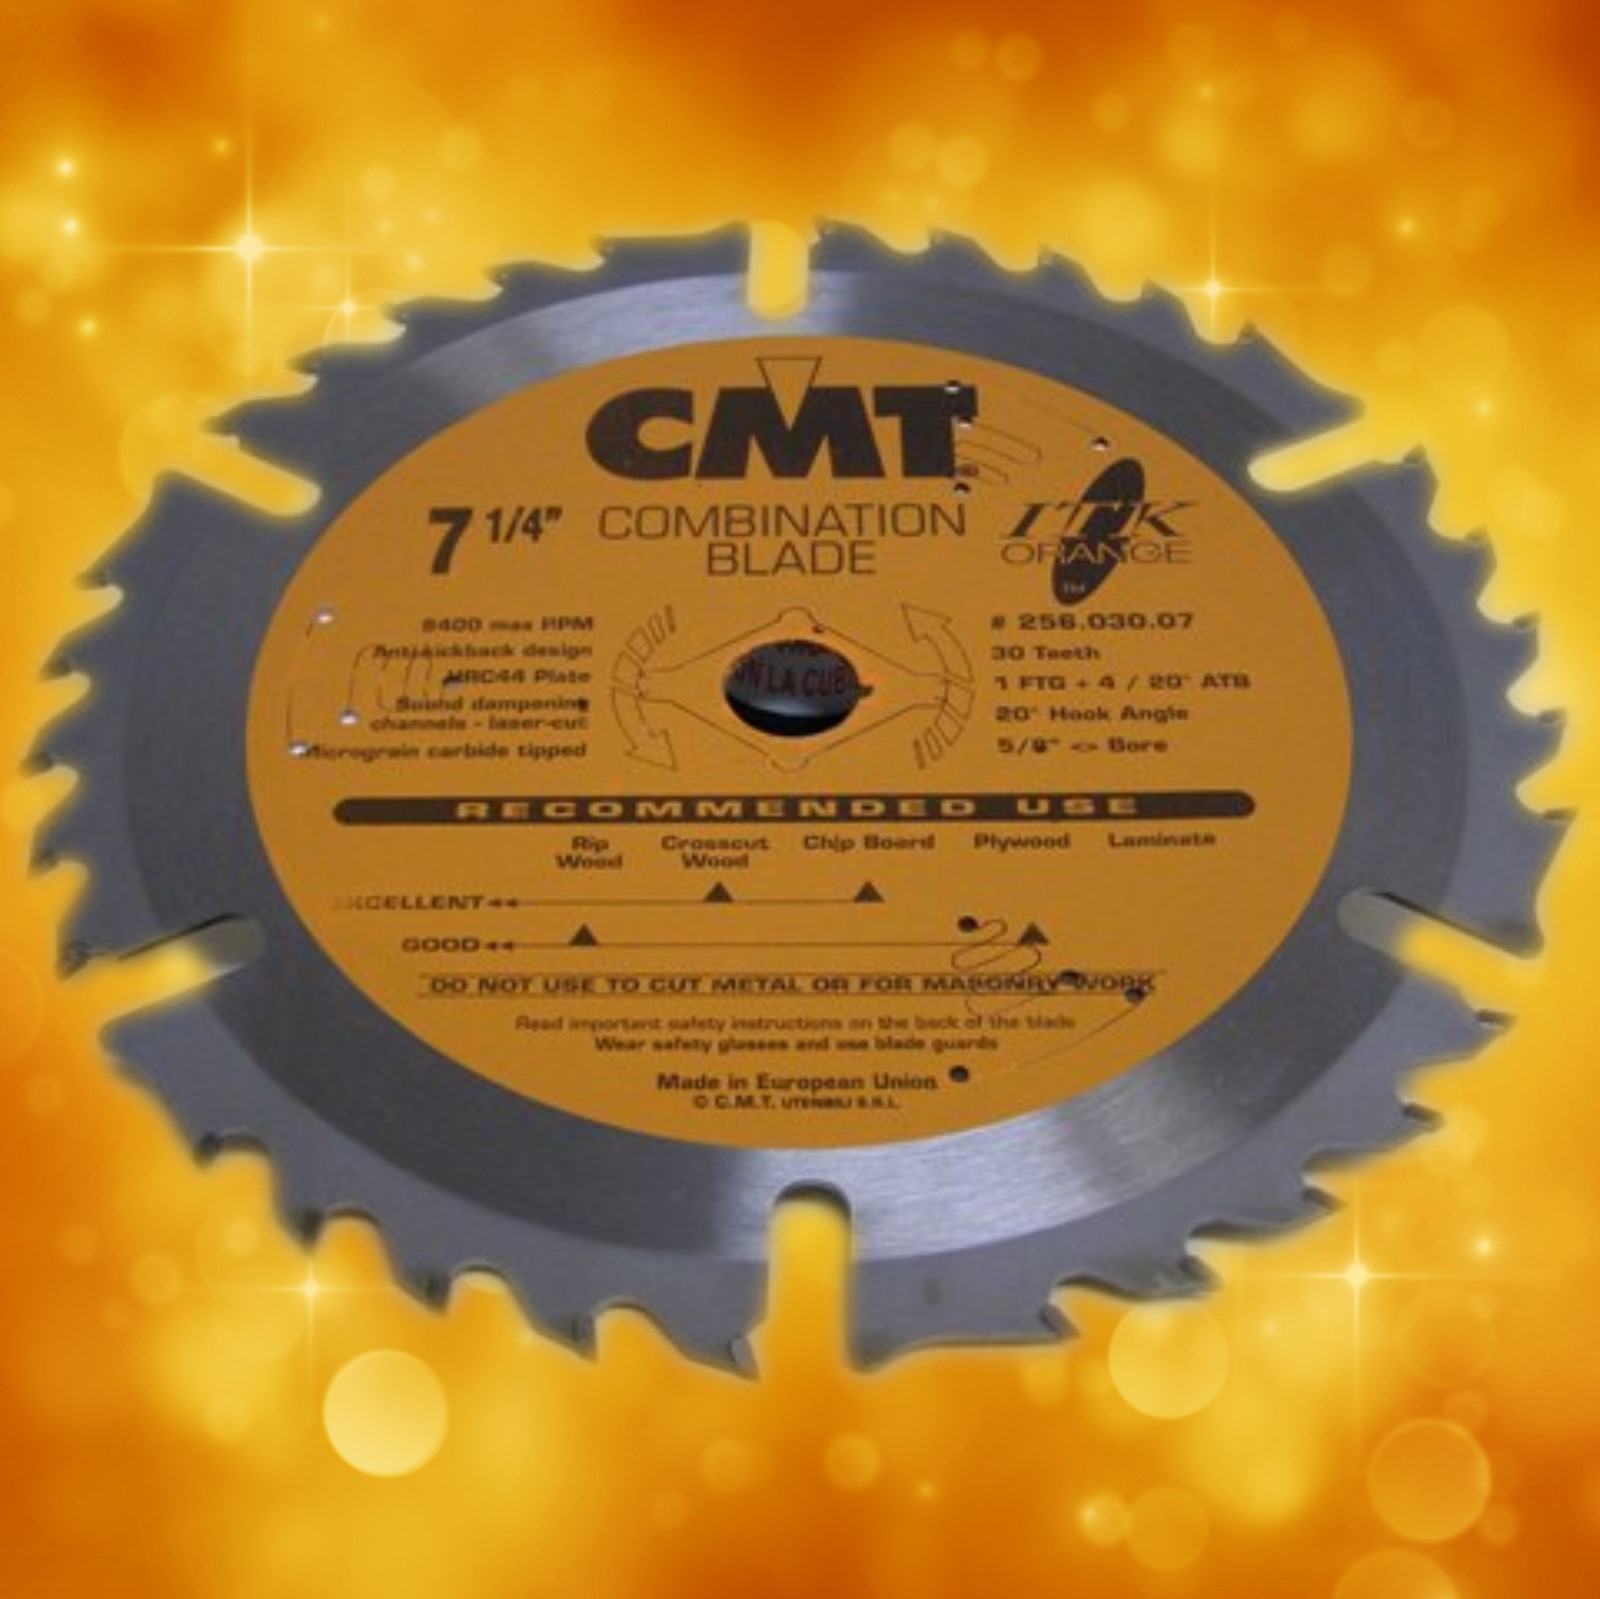 CMT ITK Combination Blade, 7.25" diameter 256.030.07